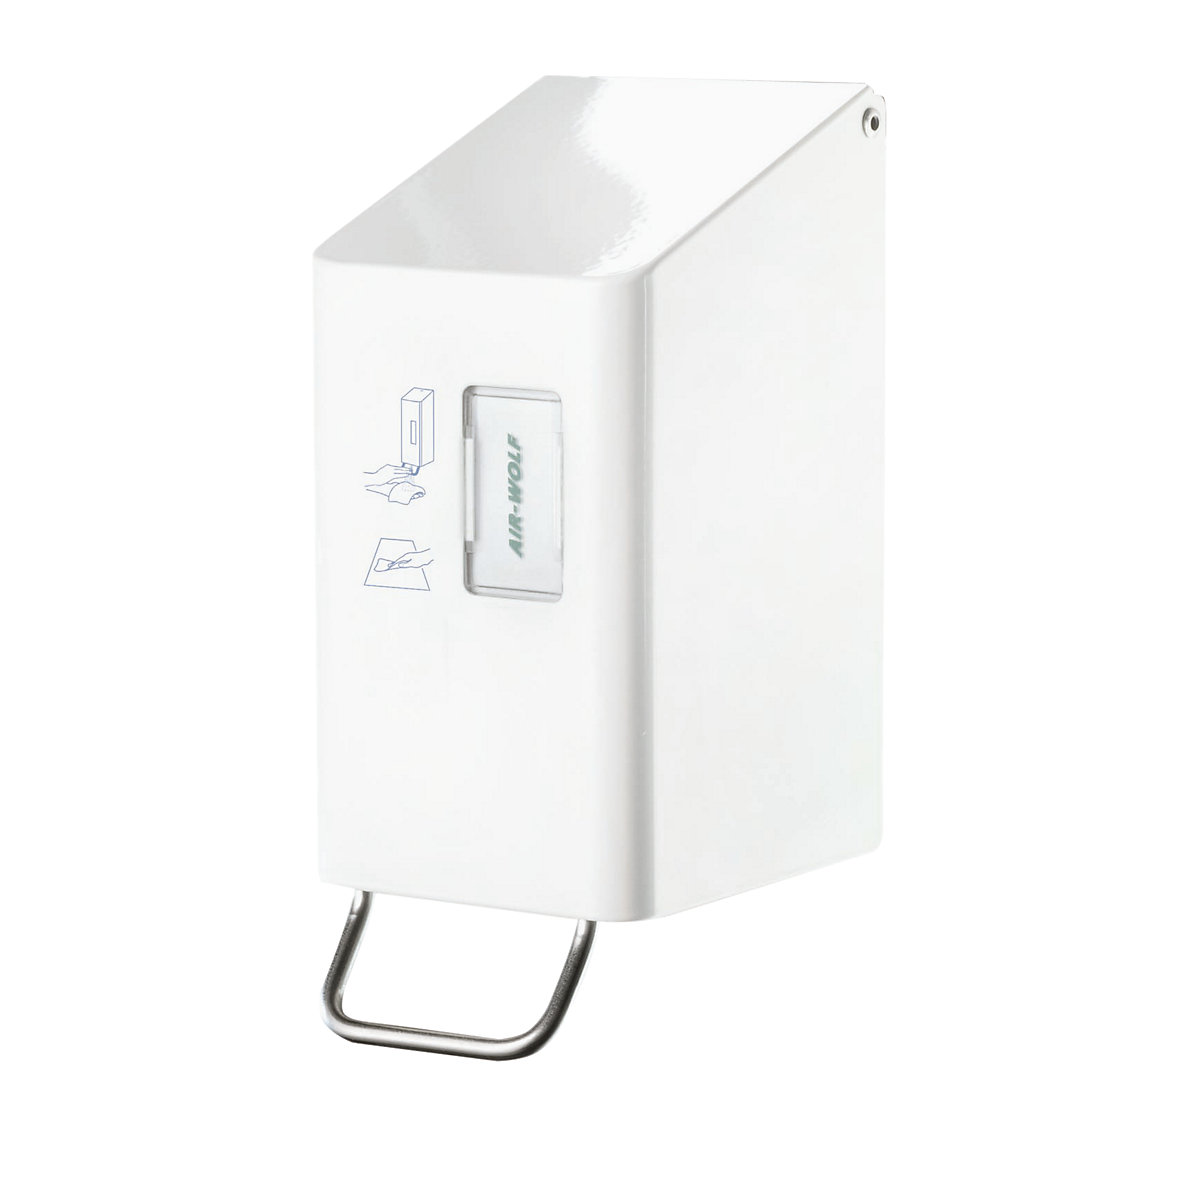 AIR-WOLF – Dávkovač čisticího prostředku pro WC sedátka, pro 250 ml, bílá ušlechtilá ocel